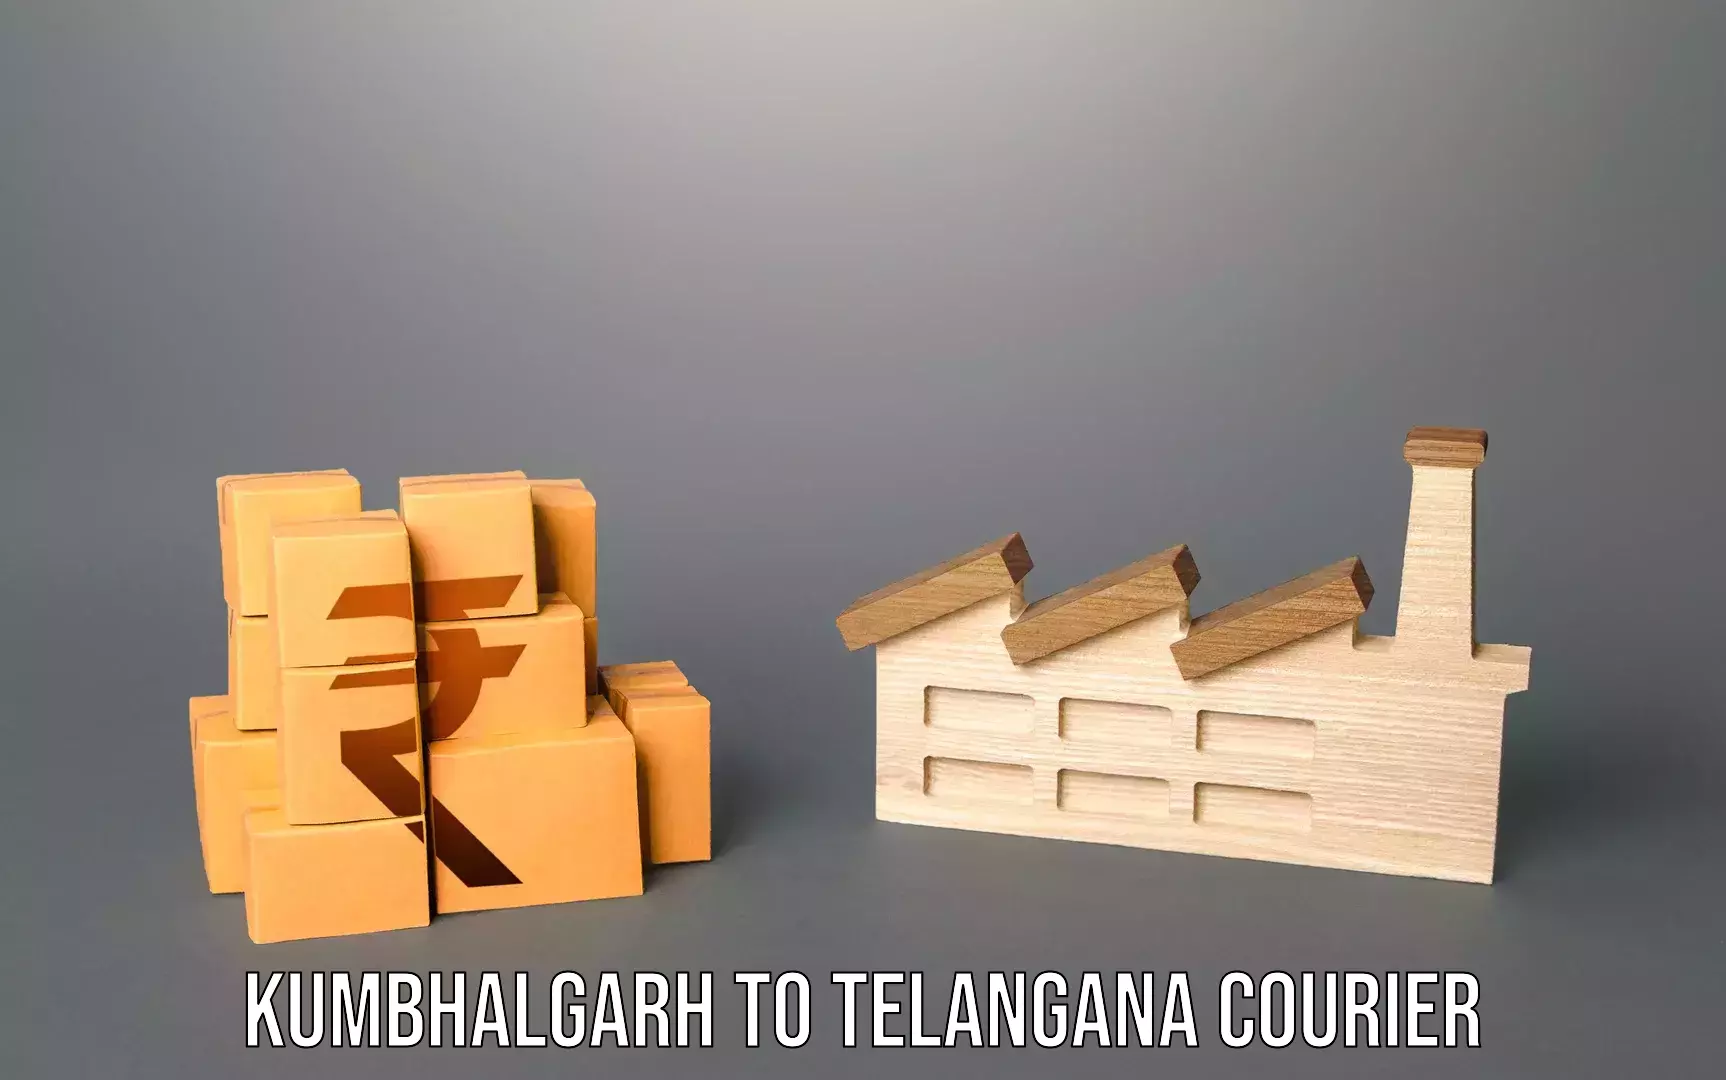 Baggage transport network Kumbhalgarh to Telangana